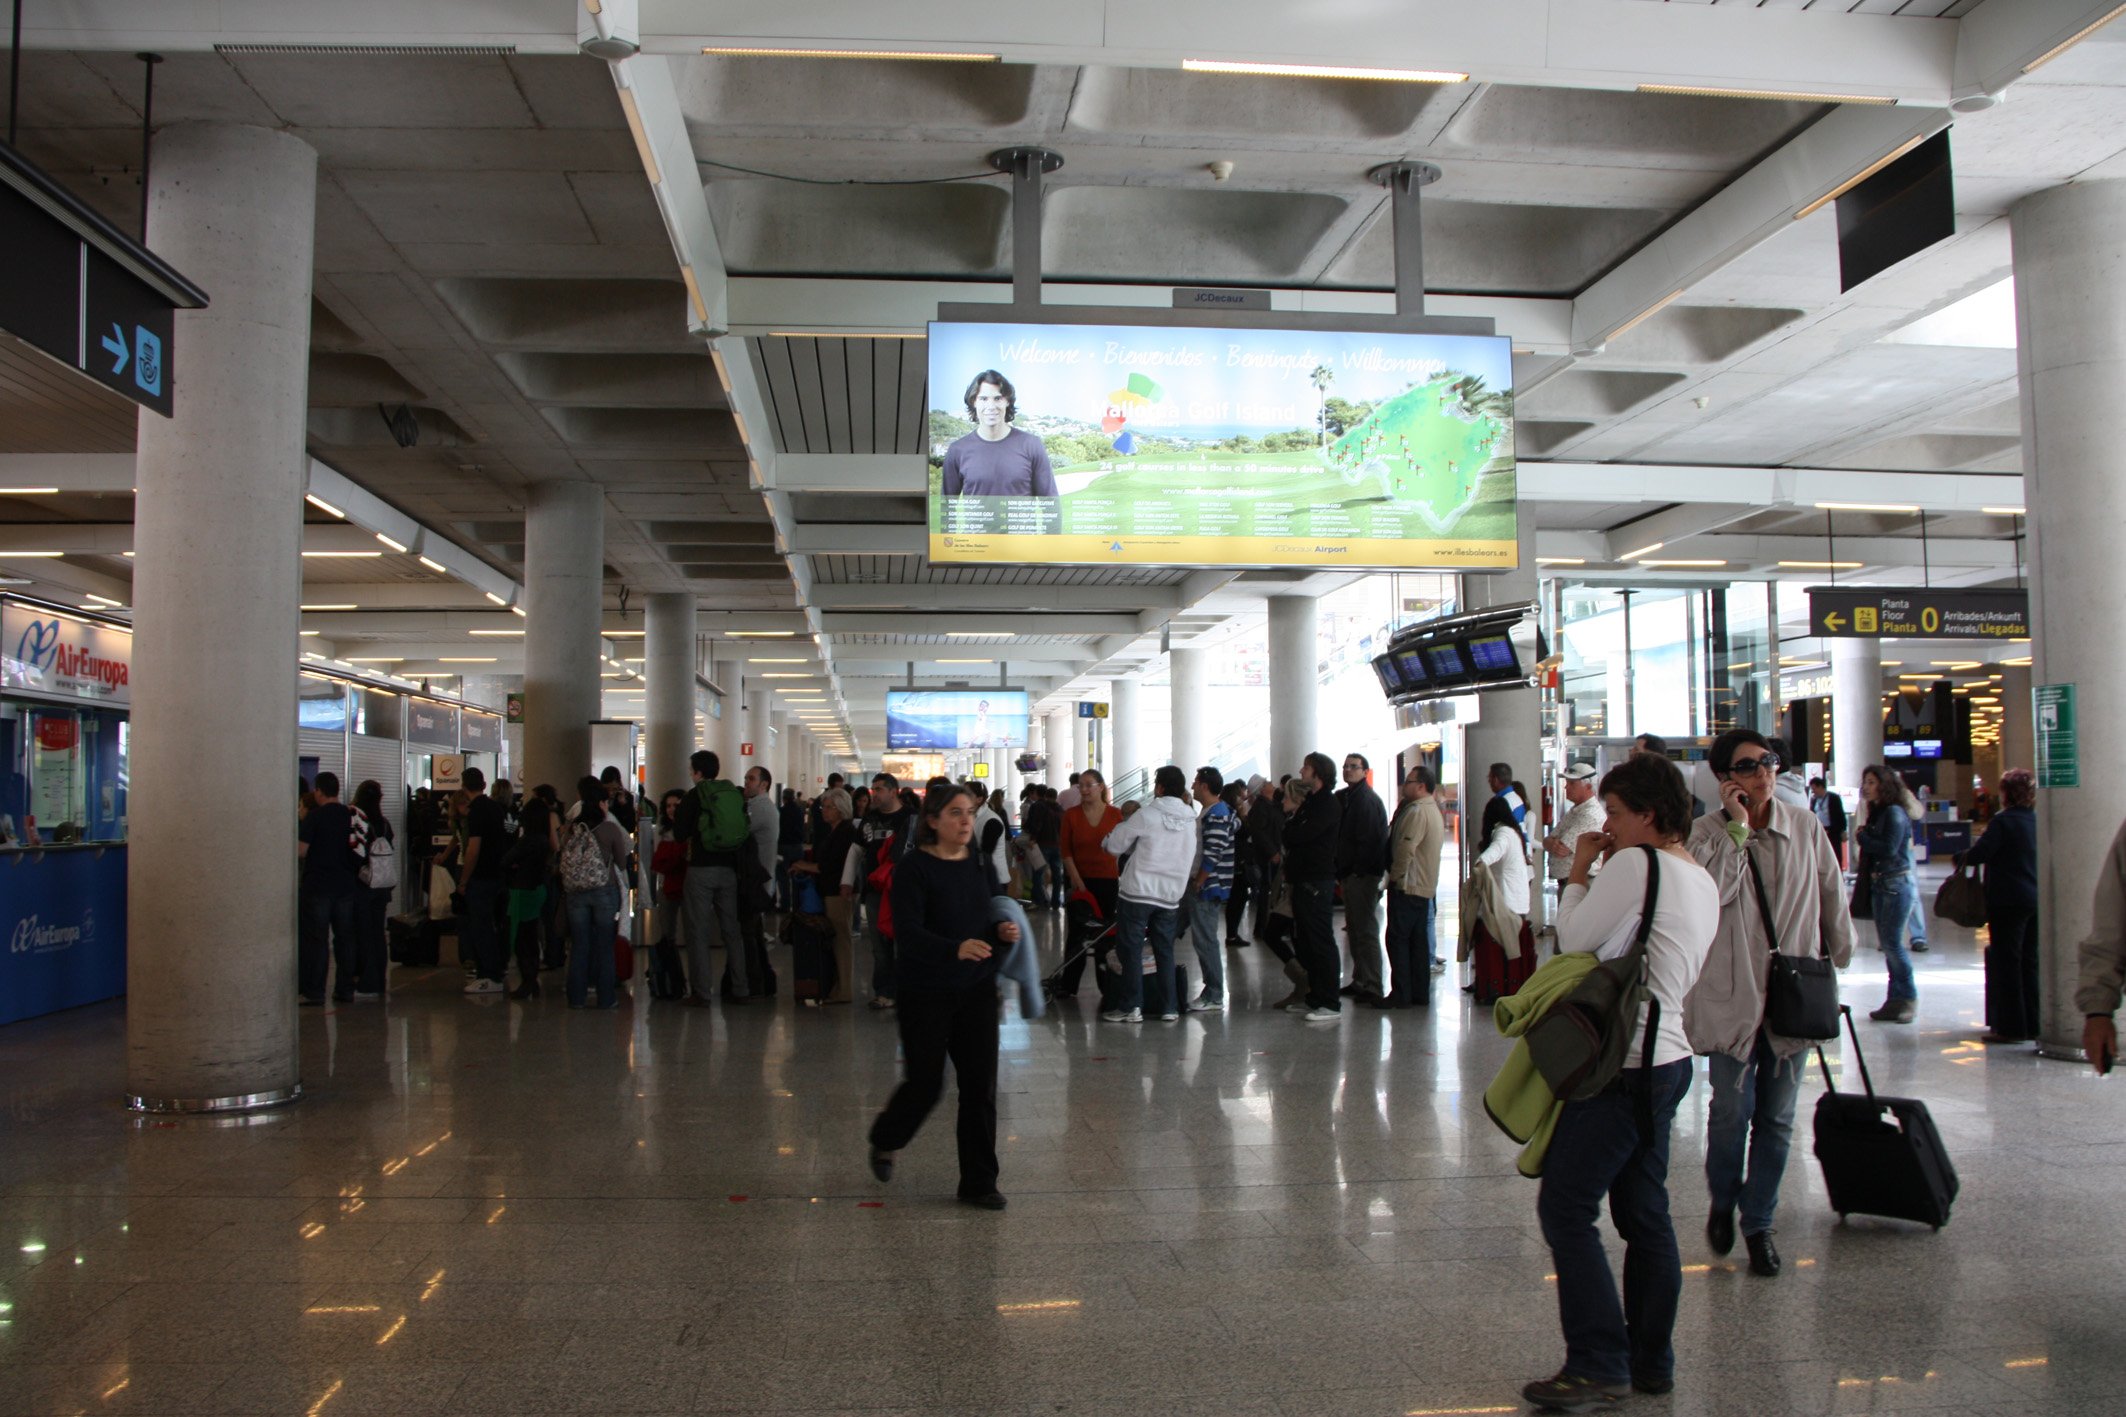 L’aeroport de Palma es dirà Aeroport Internacional Ramon Llull